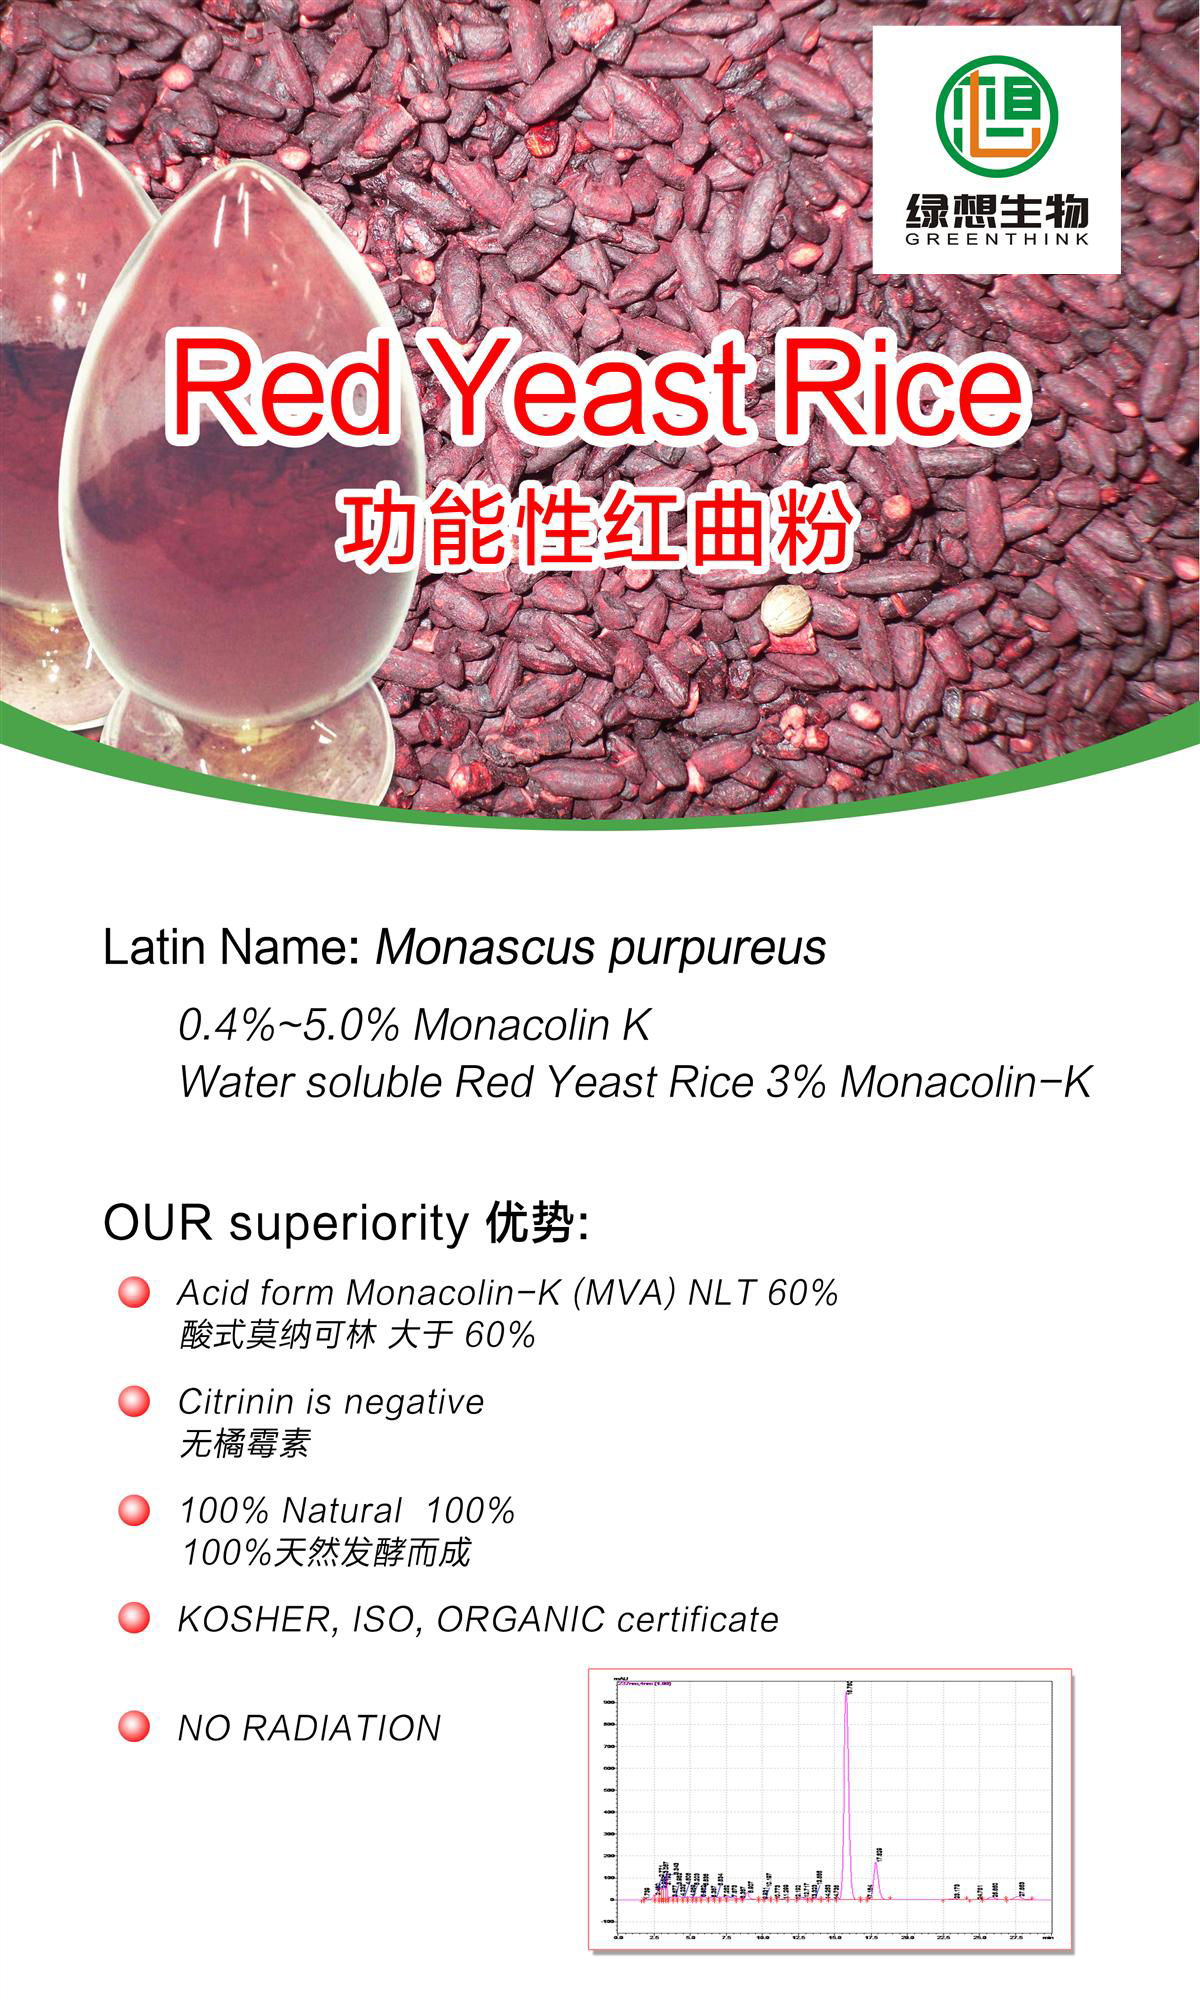  red yeast rice extract powder 0.2% Monacoln K 